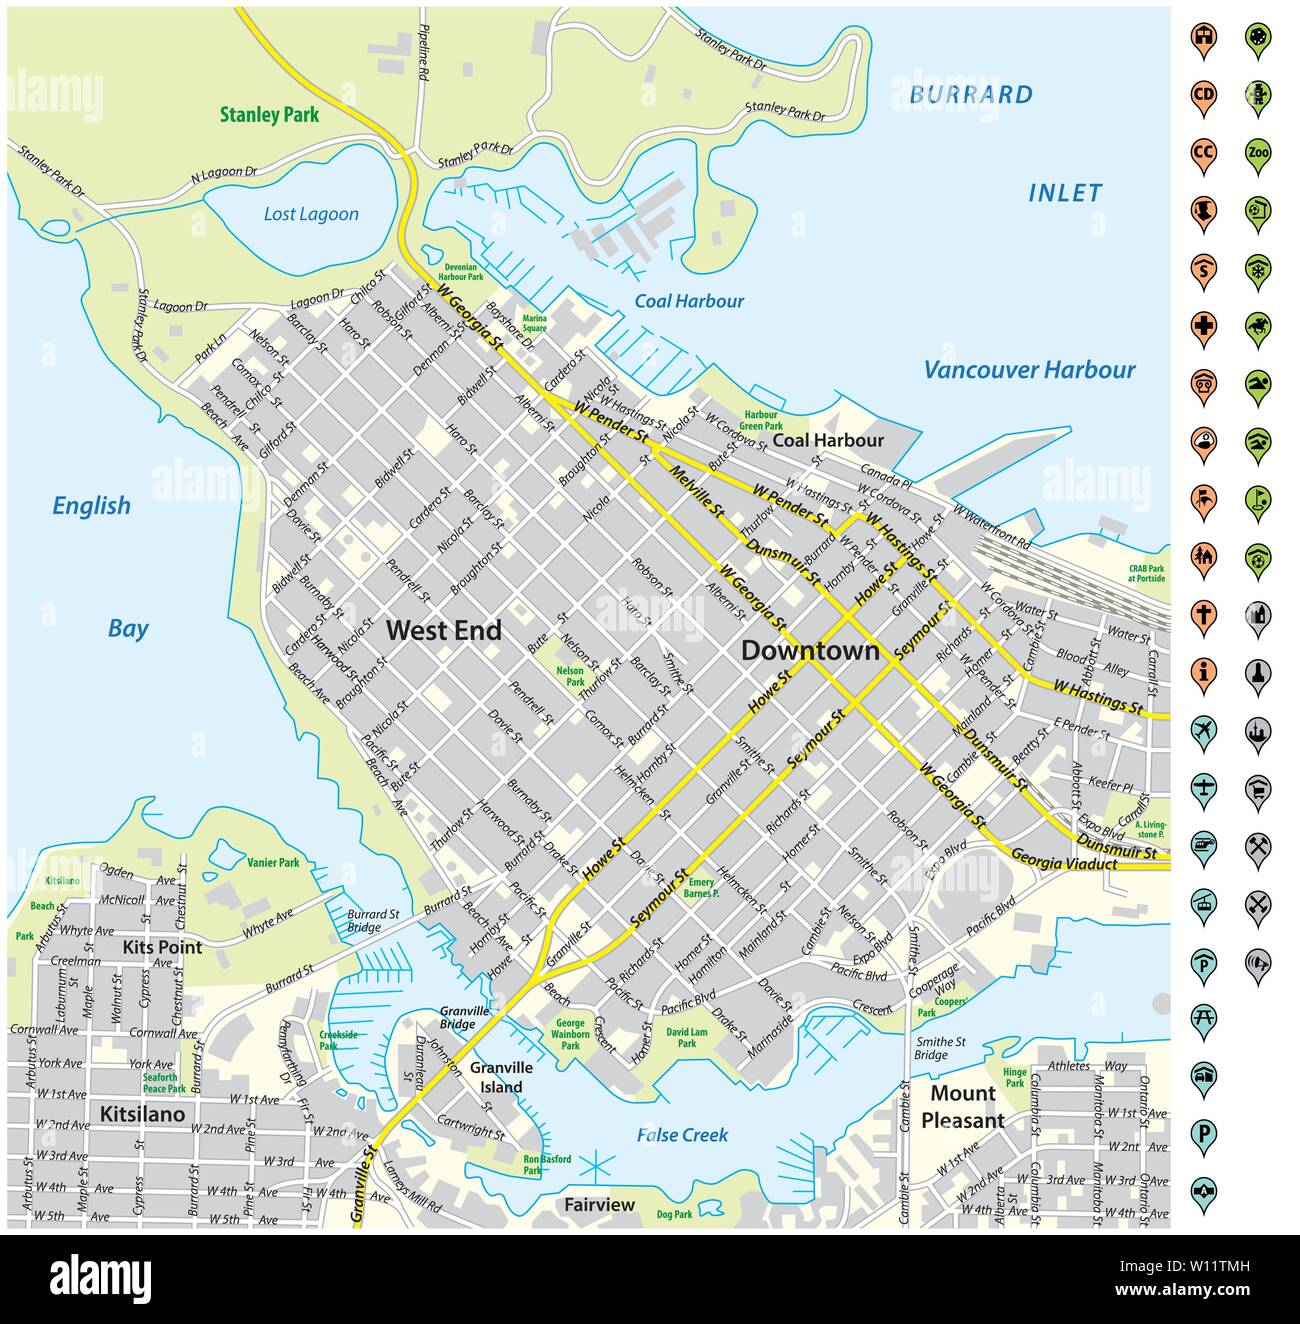 Plan des rues du centre-ville de Vancouver avec l'axe de communication et de l'infrastructure d'icônes Illustration de Vecteur